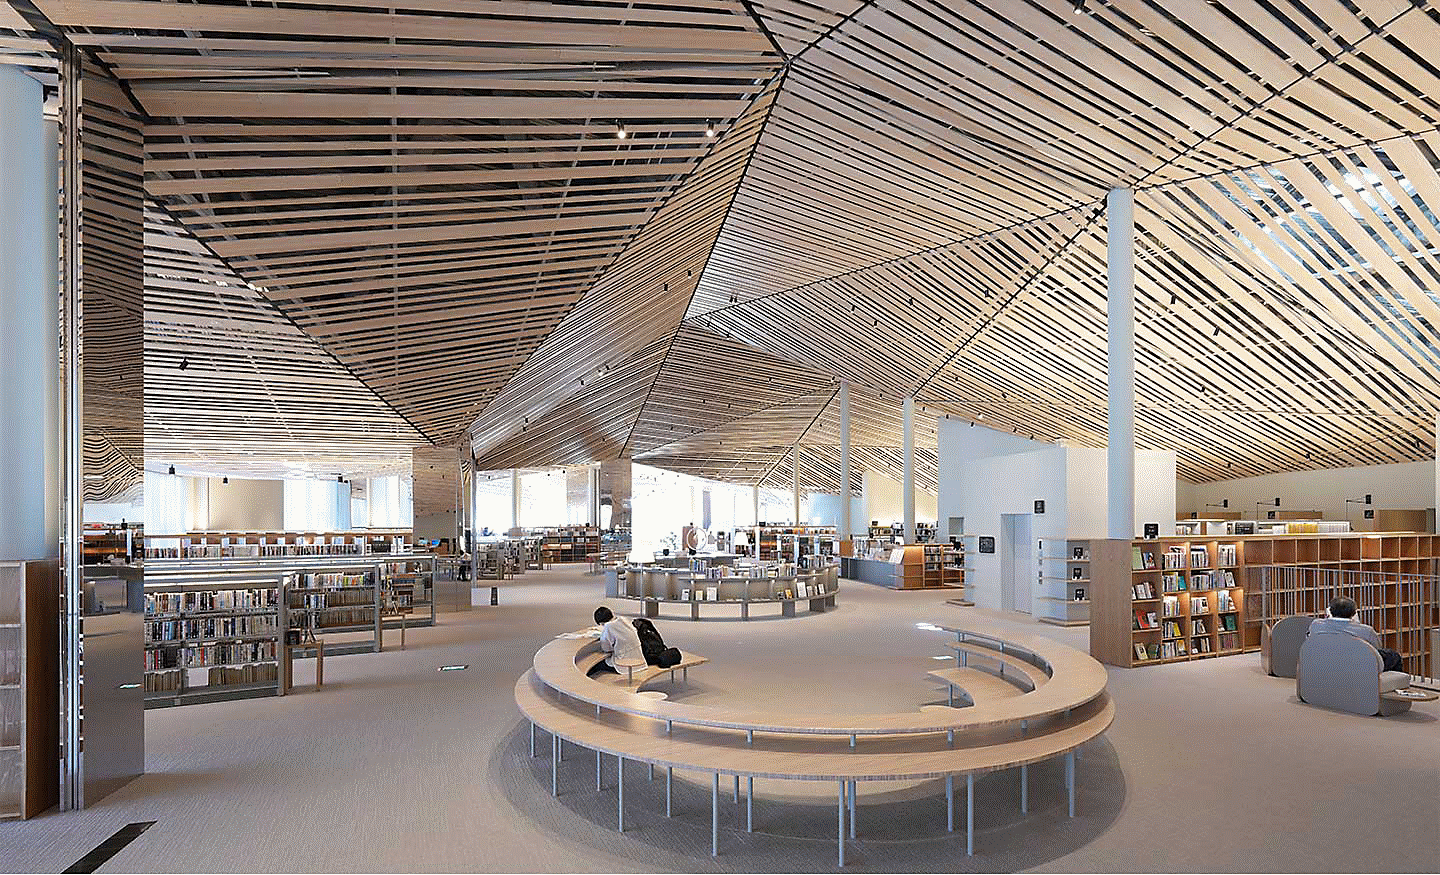 Bilde av innsiden av et stort bibliotek med et detaljrikt design og mange rette treplanker i taket, med oppløsning ut i alle hjørner av skjermen